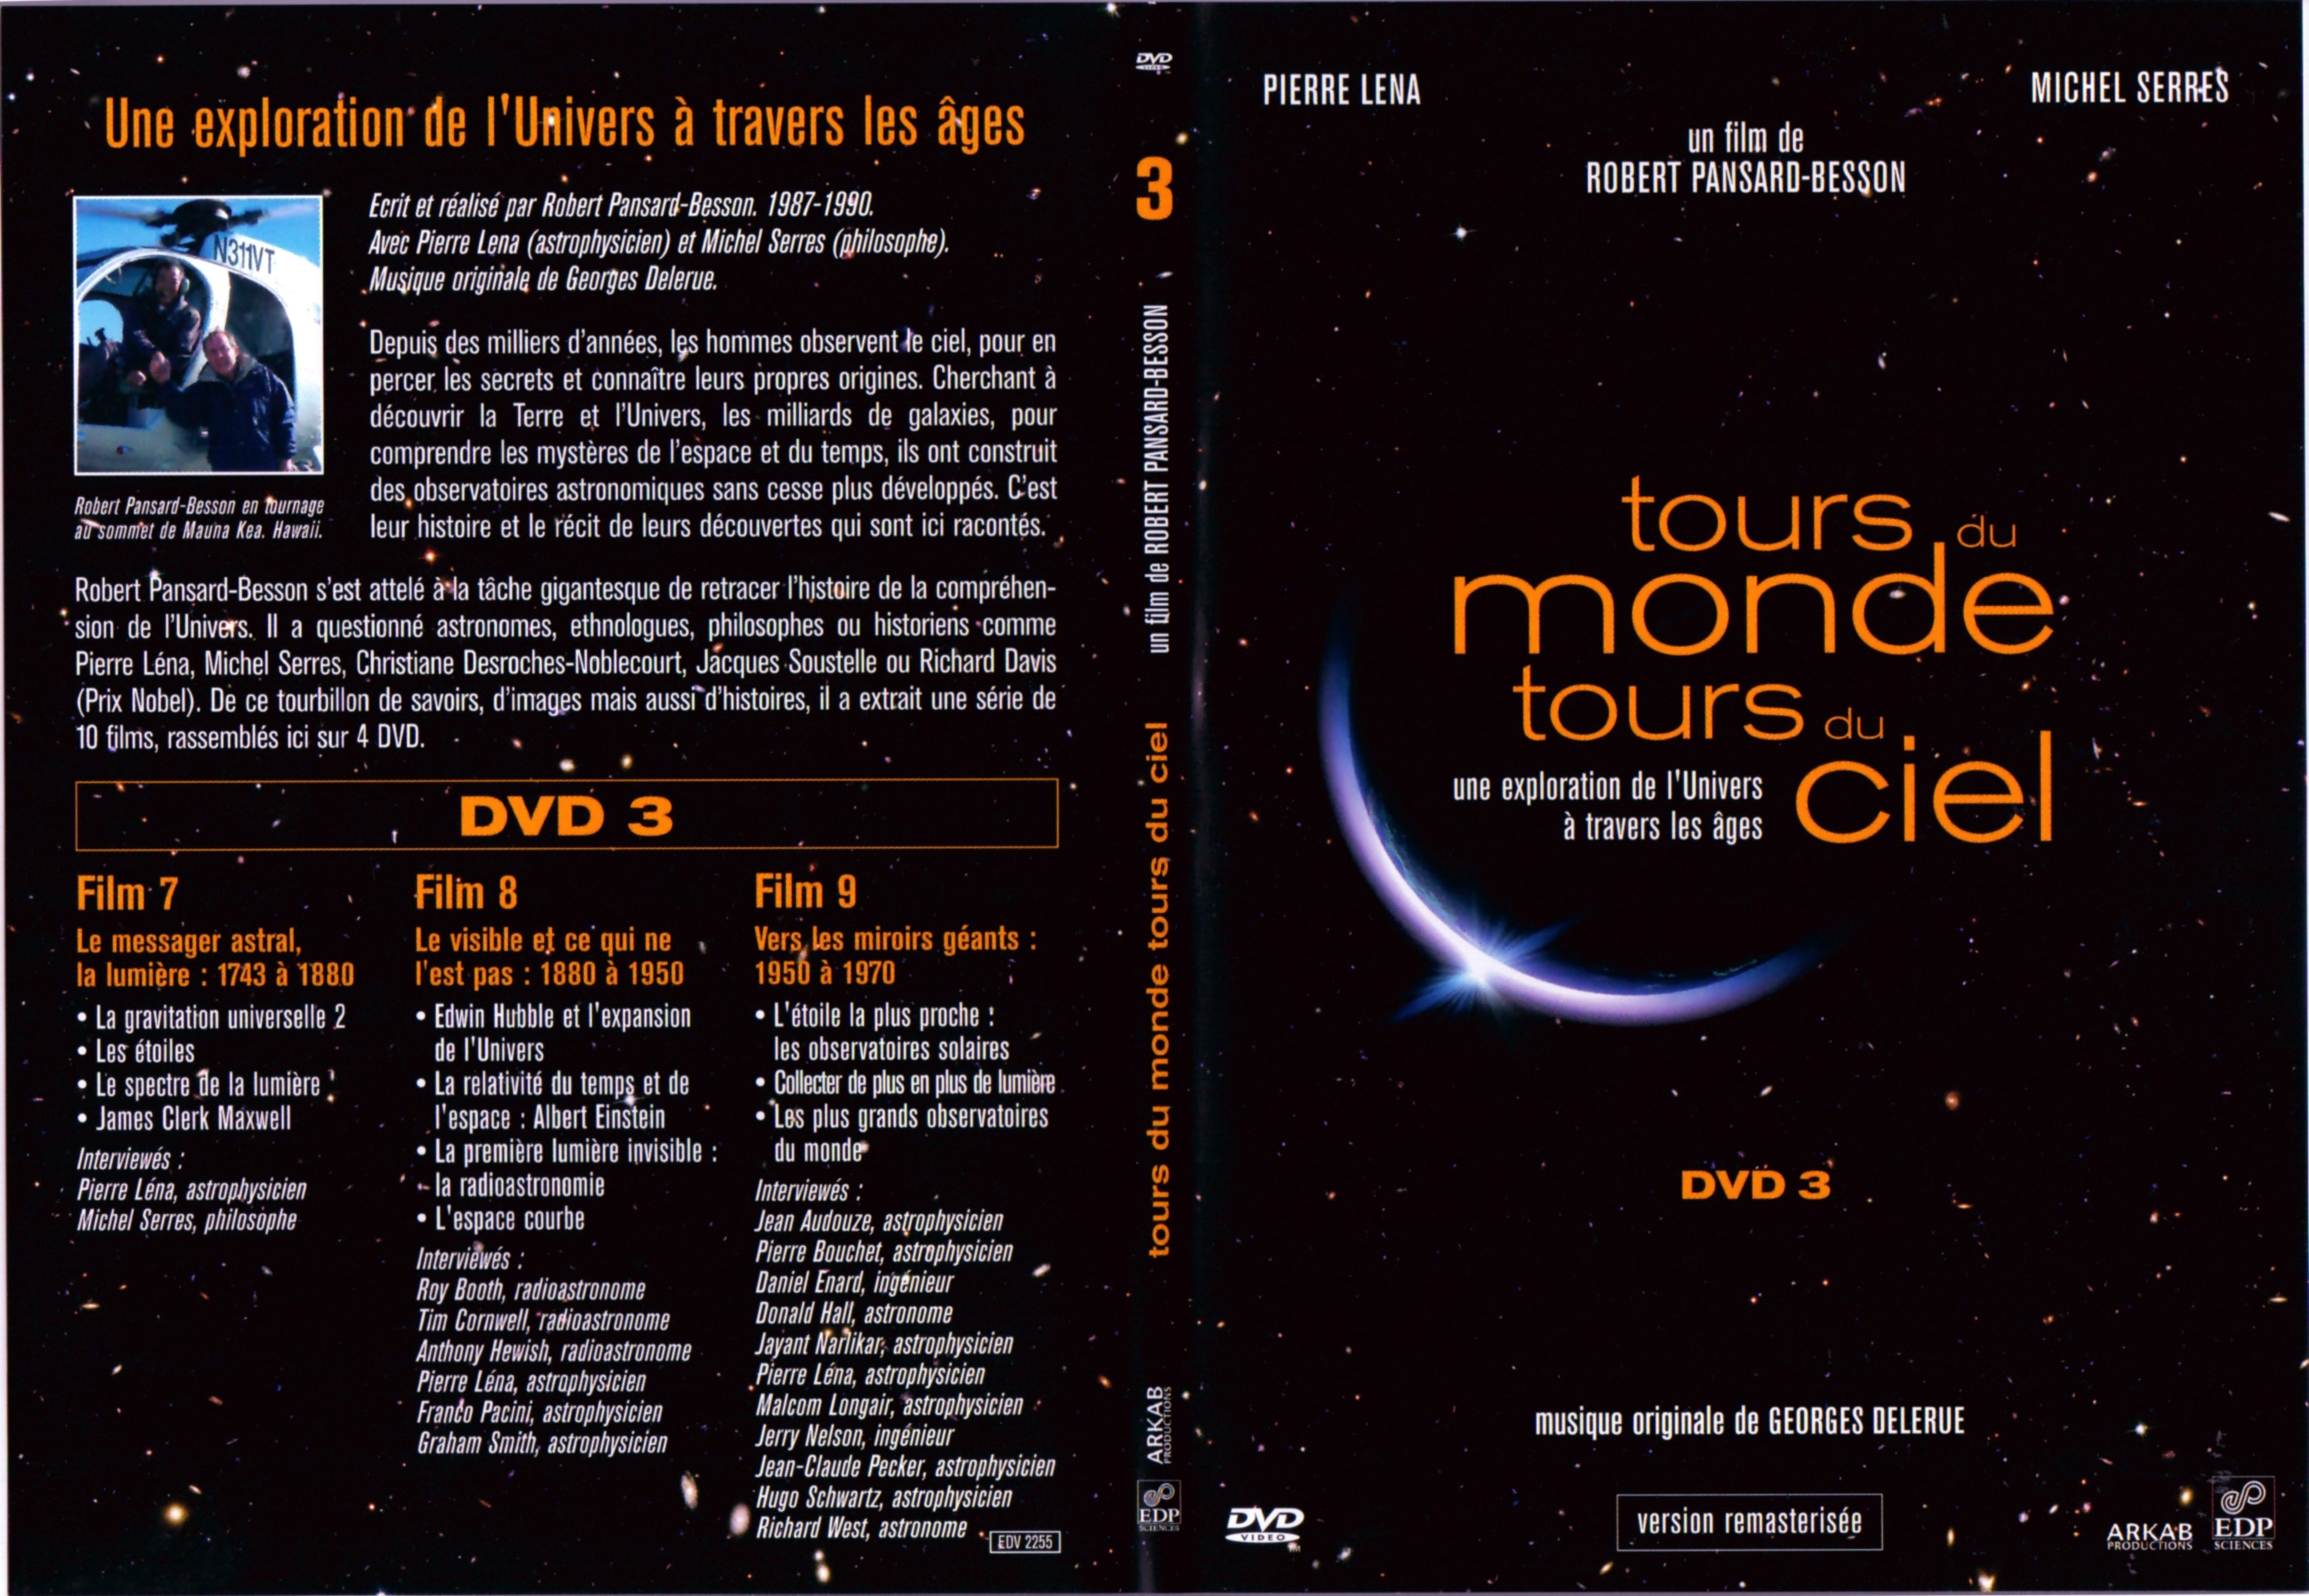 Jaquette DVD Tours du monde Tours du ciel DVD 3